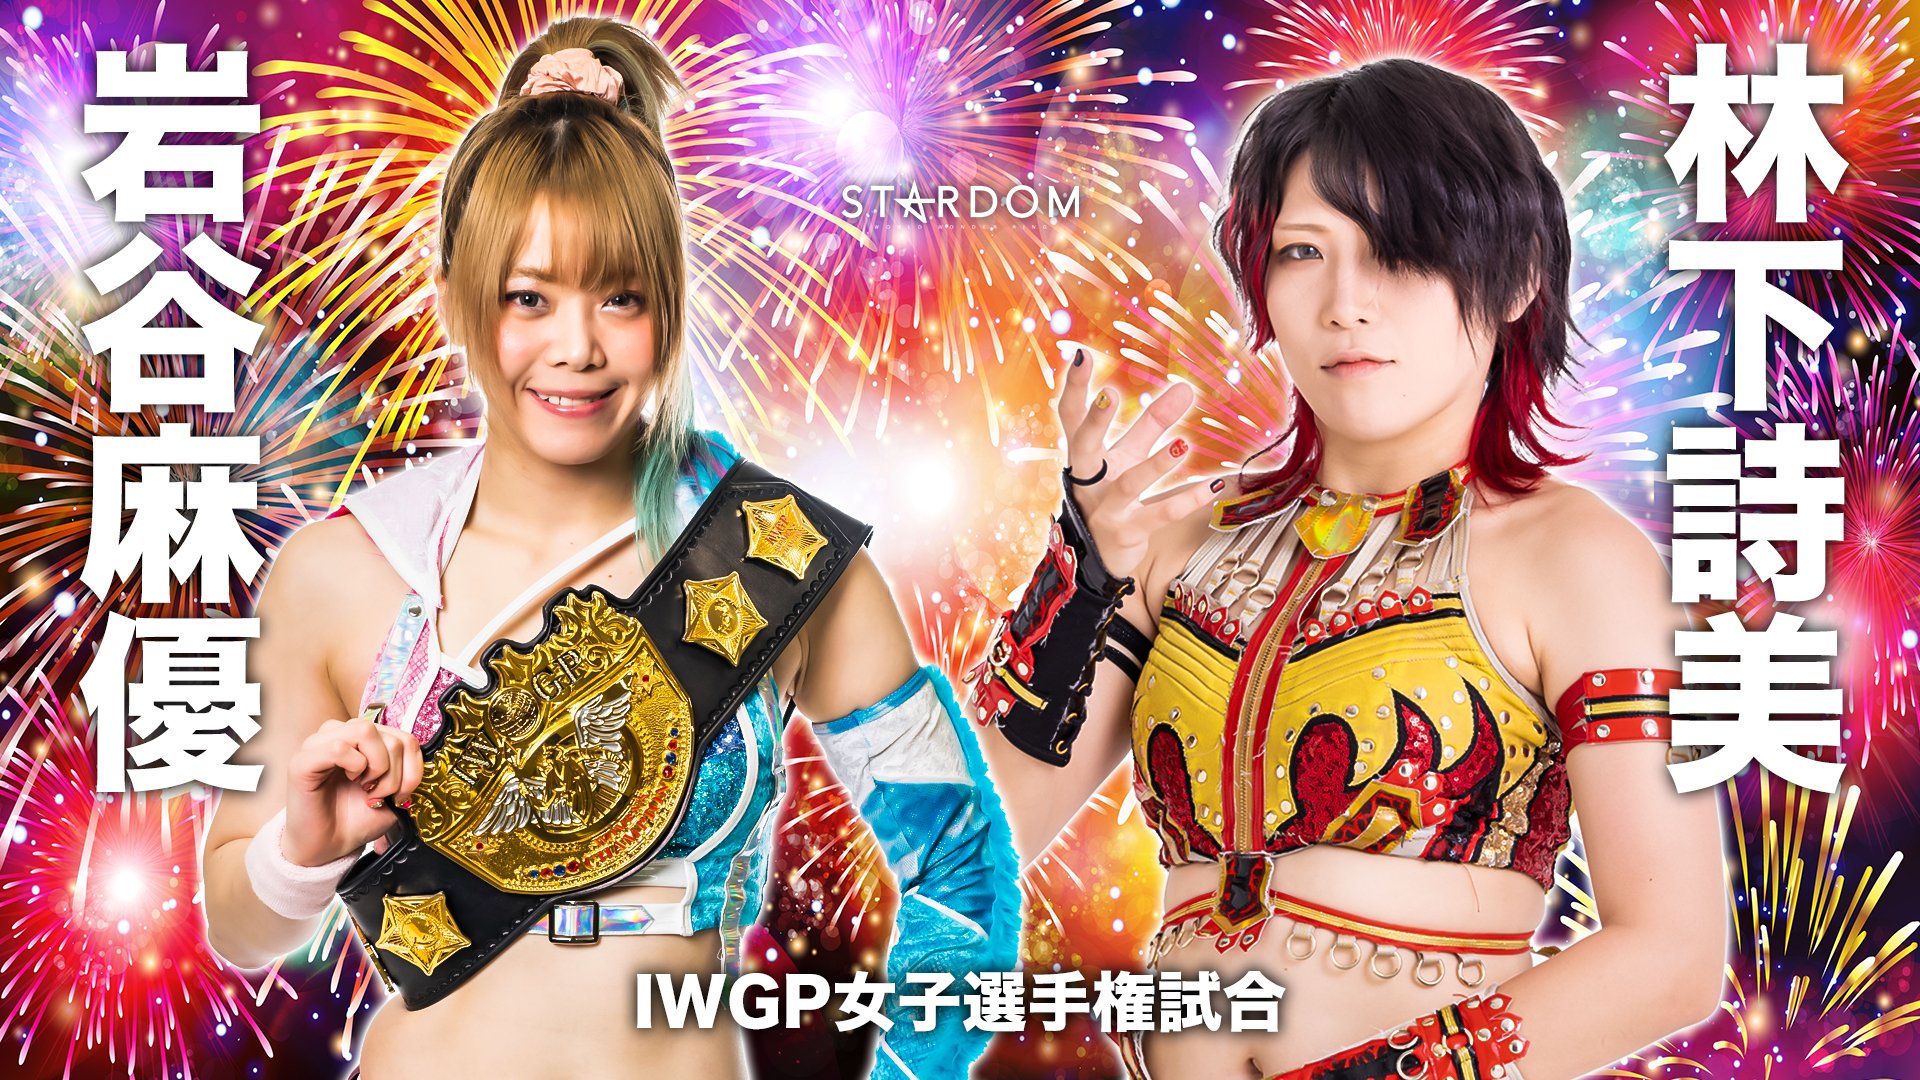 Utami vs Mayu is the headline of this week's pro wrestling schedule